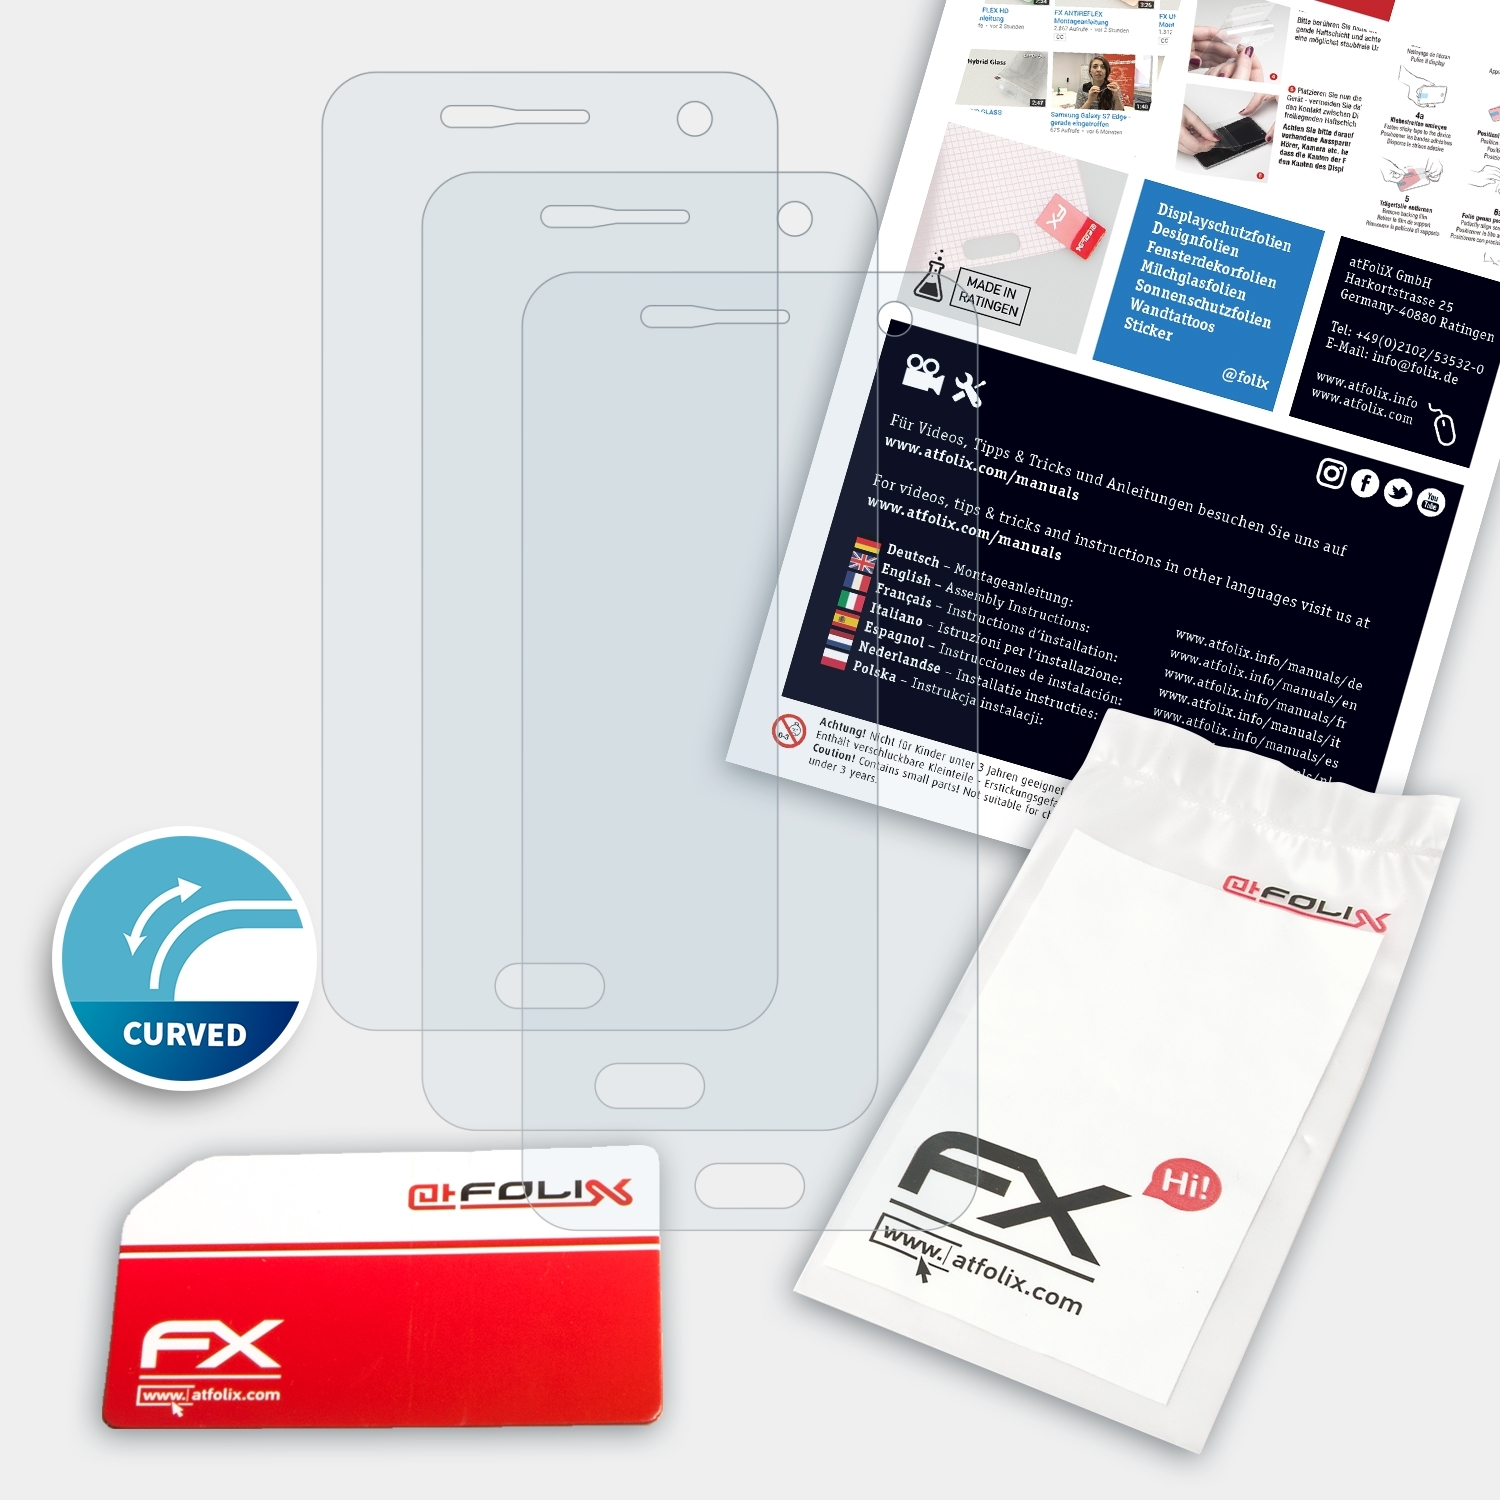 (E4816)) Displayschutz(für ATFOLIX Micromax 3x FX-ActiFleX Dual 4